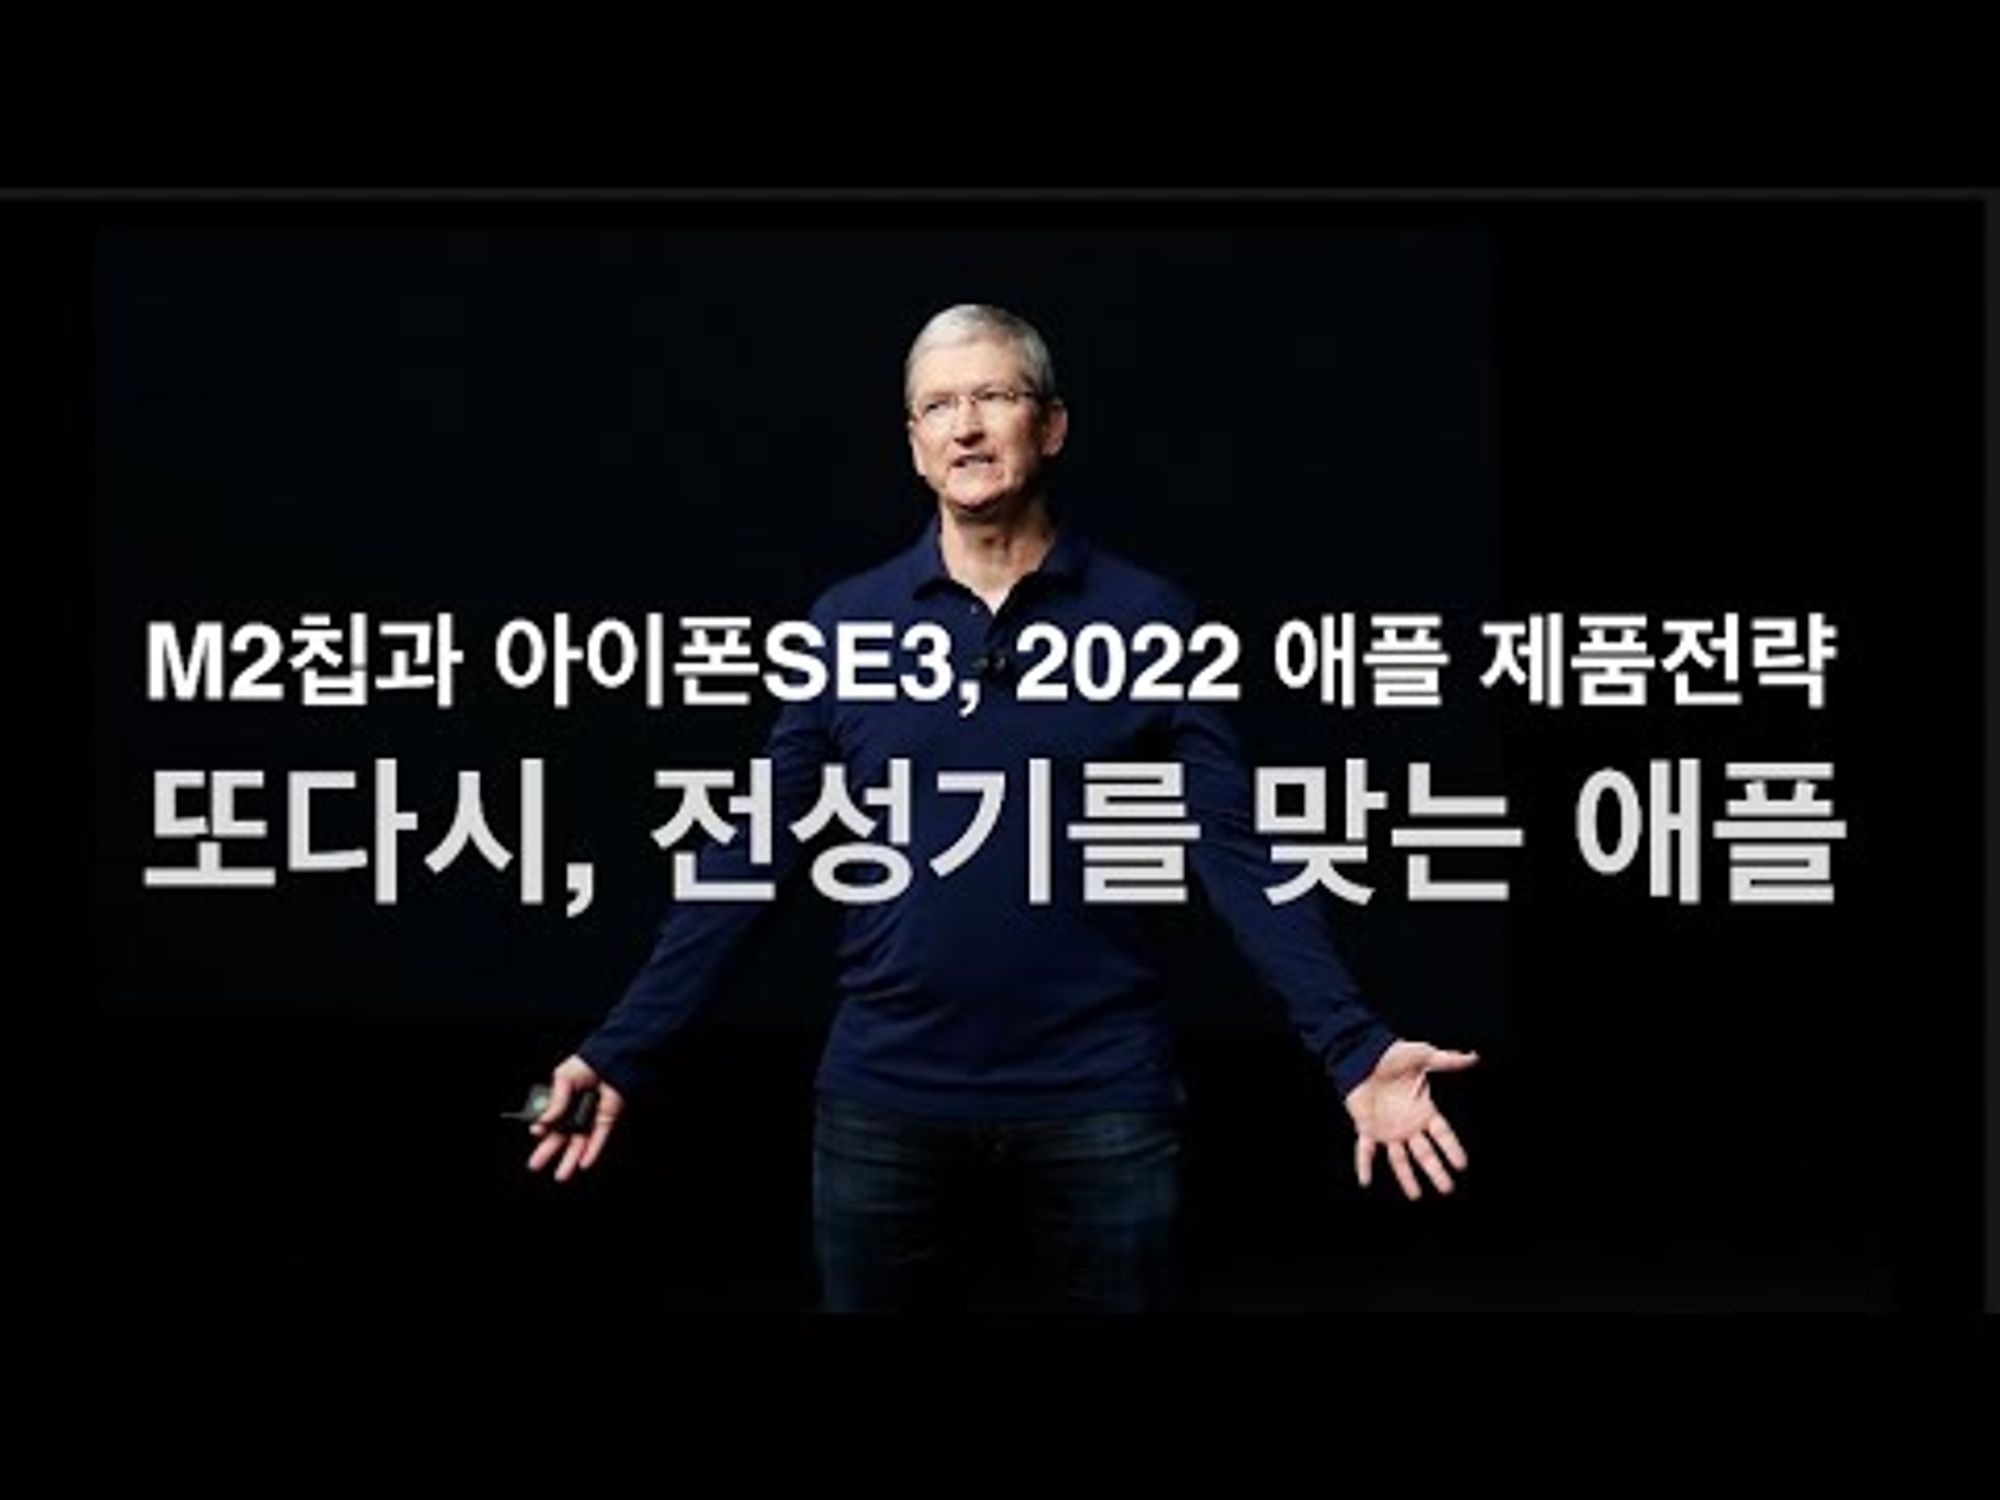 M2칩과 아이폰SE3, 그리고 다시 전성기를 맞는 애플. 2022 애플의 제품 전략. (폐쇄적인 애플은 어떻게 다시 전성기를 구가하고 있나?)